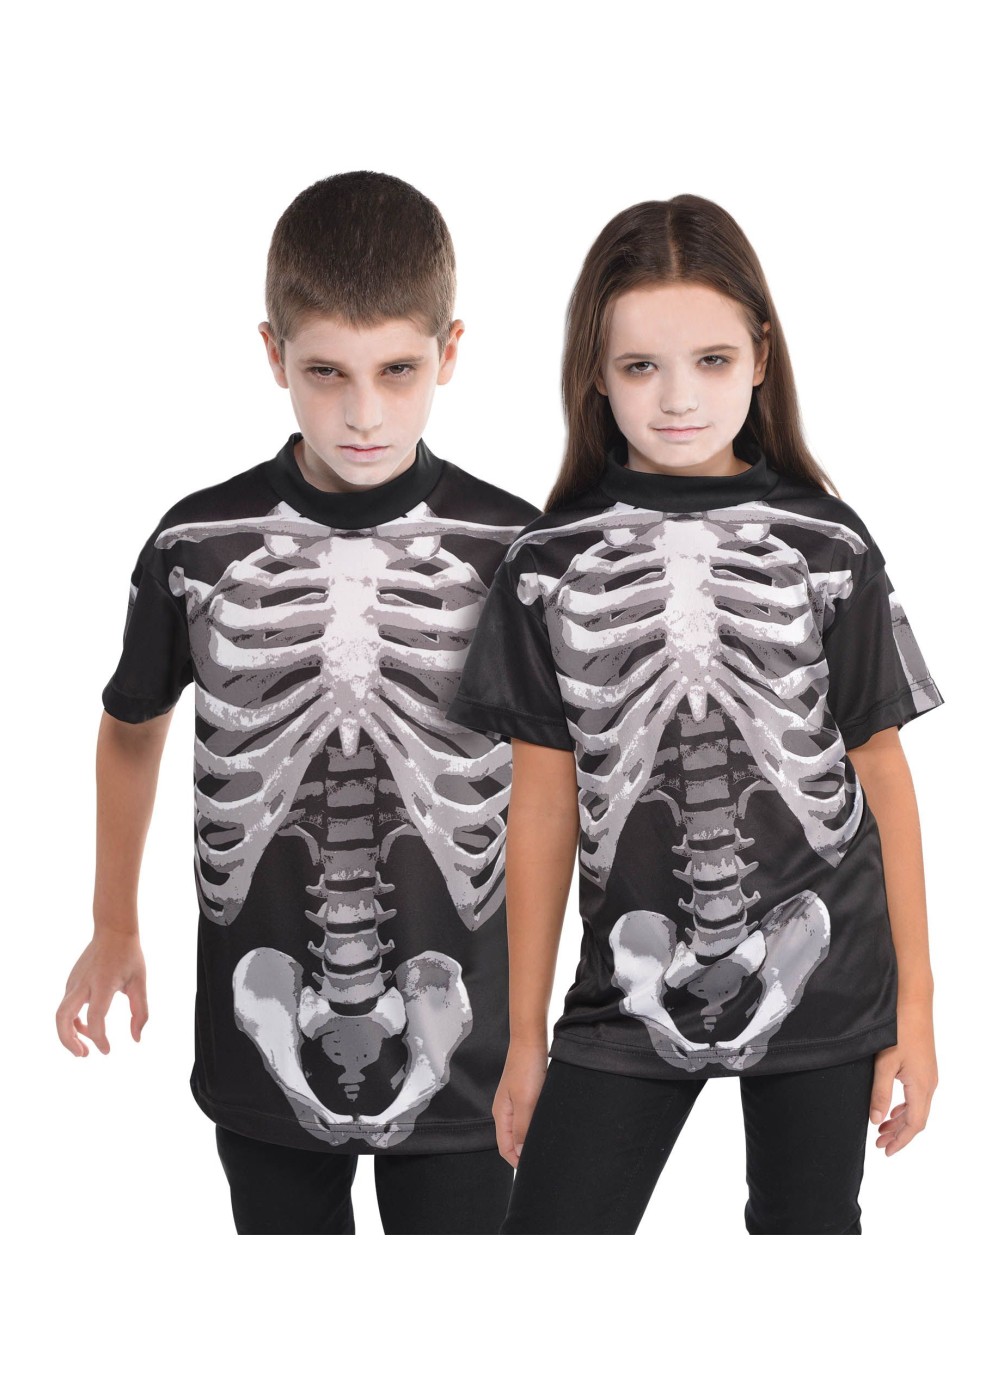 Kids Black And Bone Child Shirt